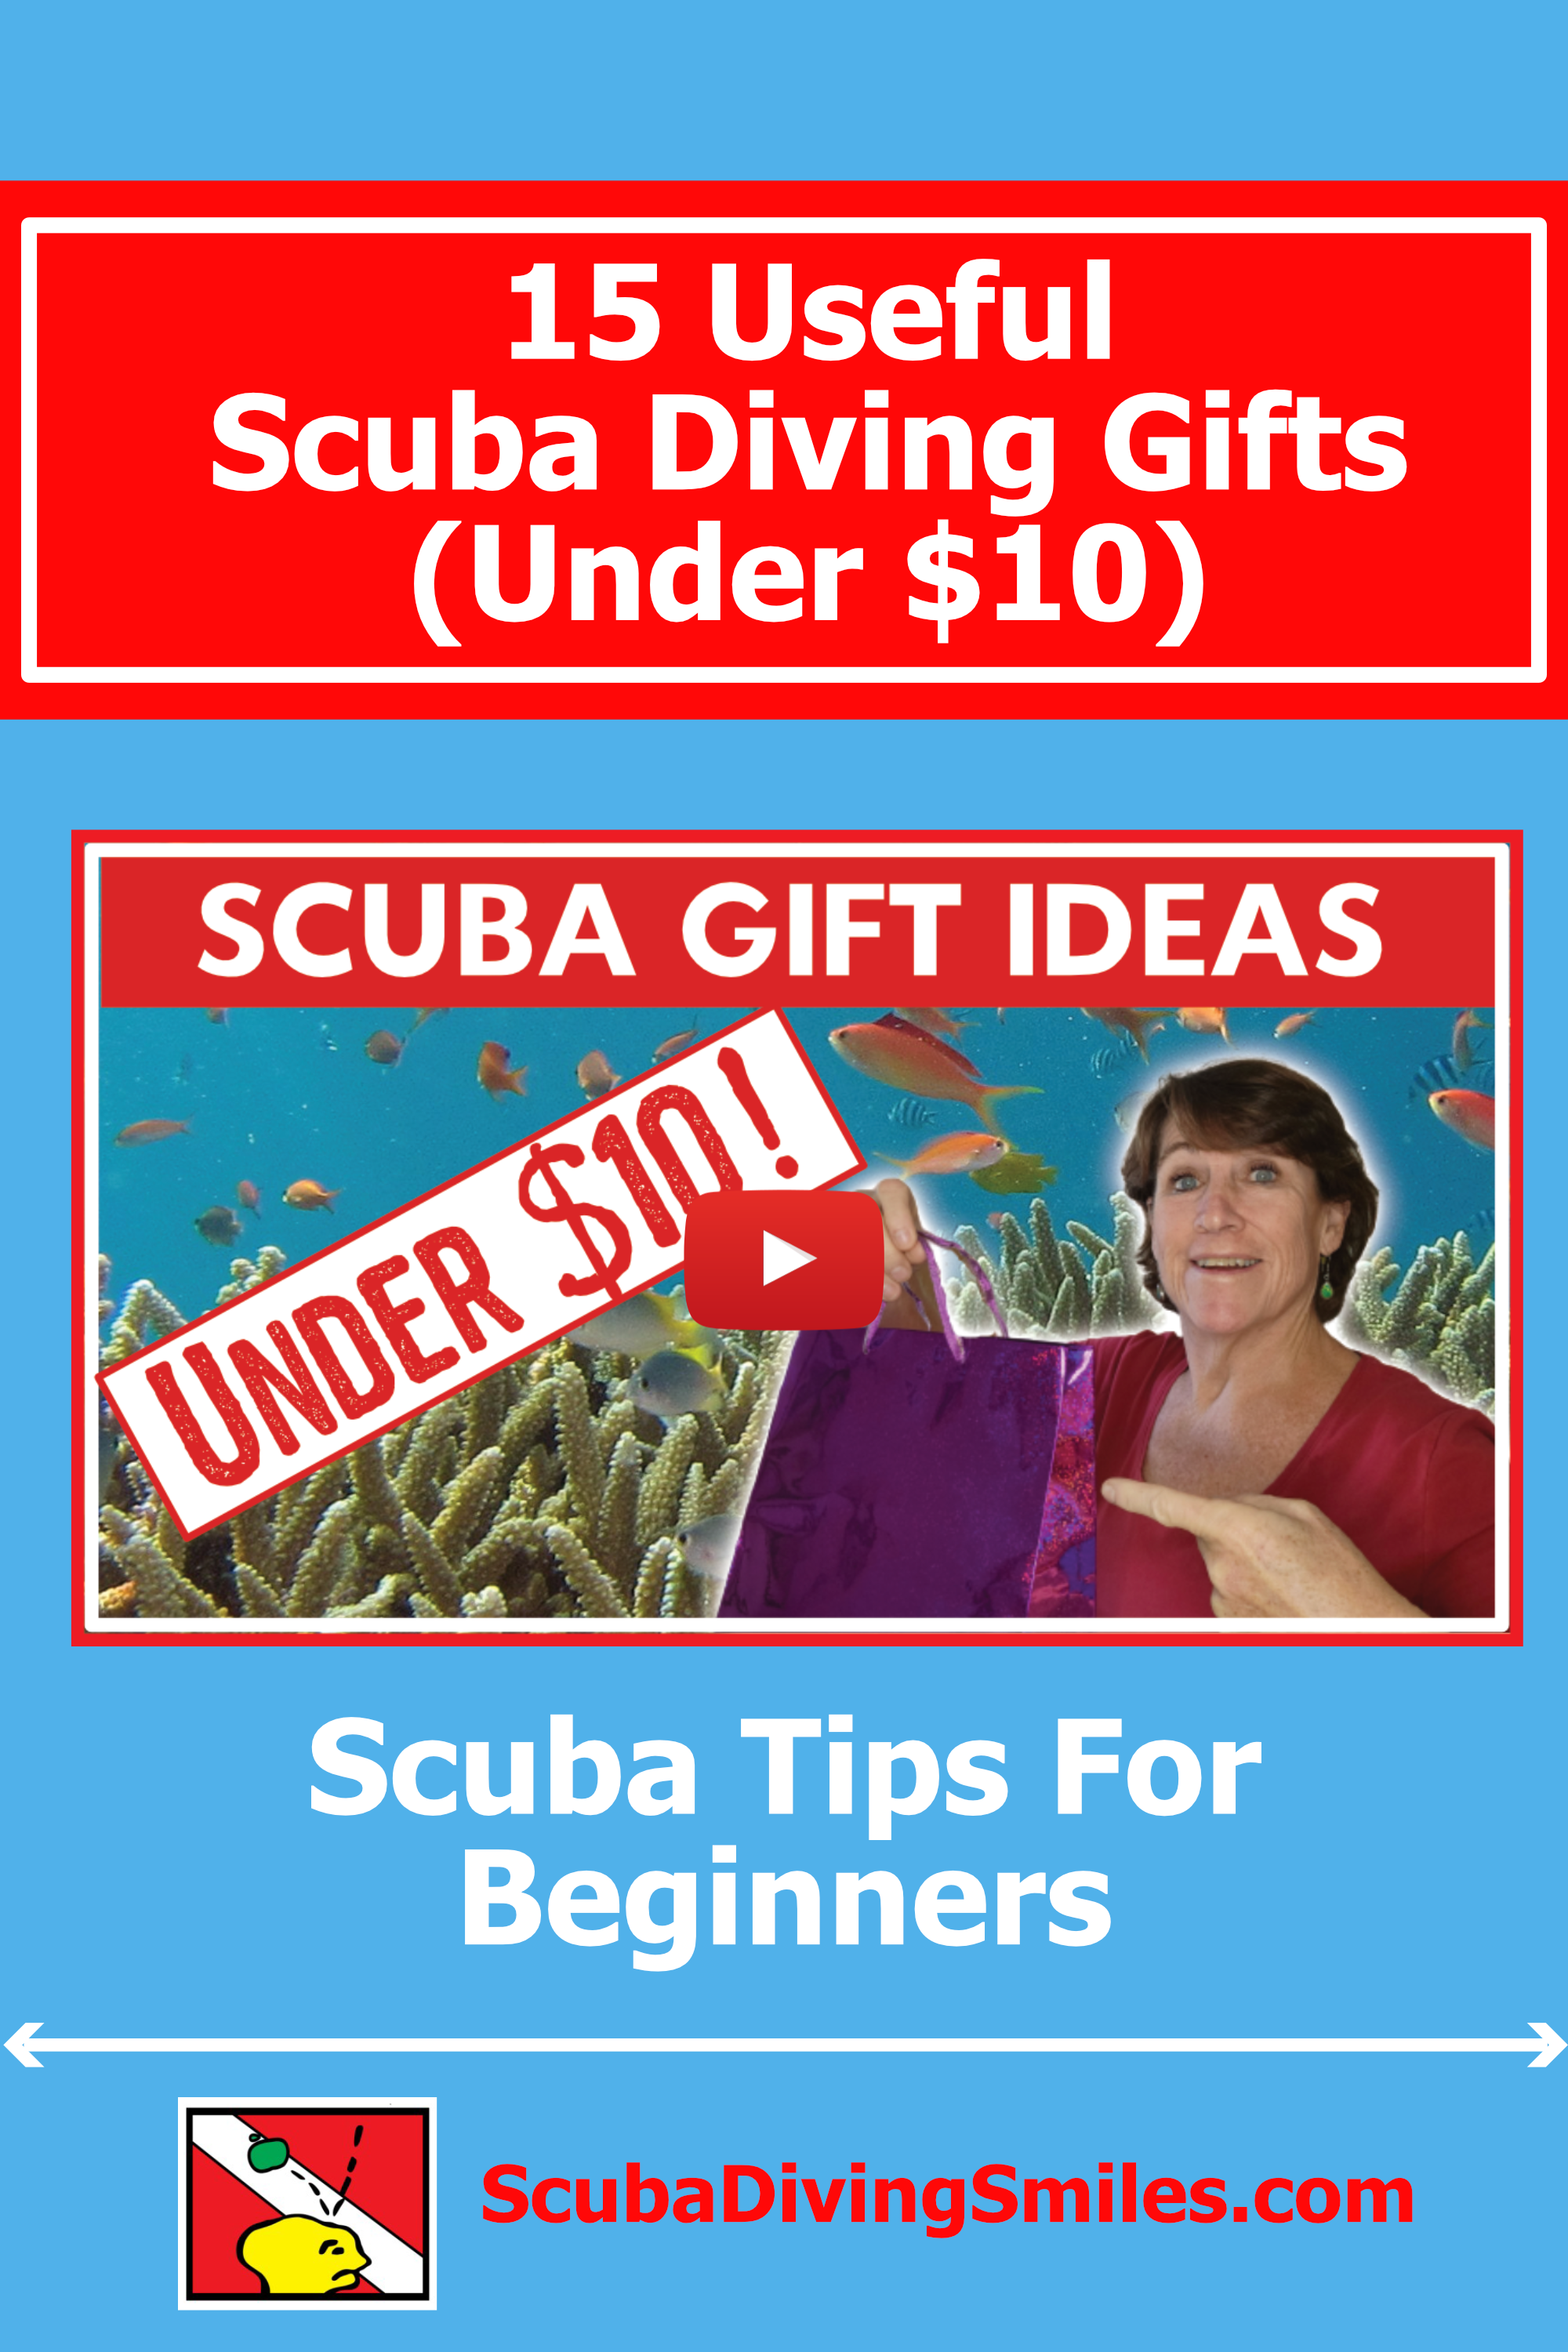 scuba diving gift ideas under $10